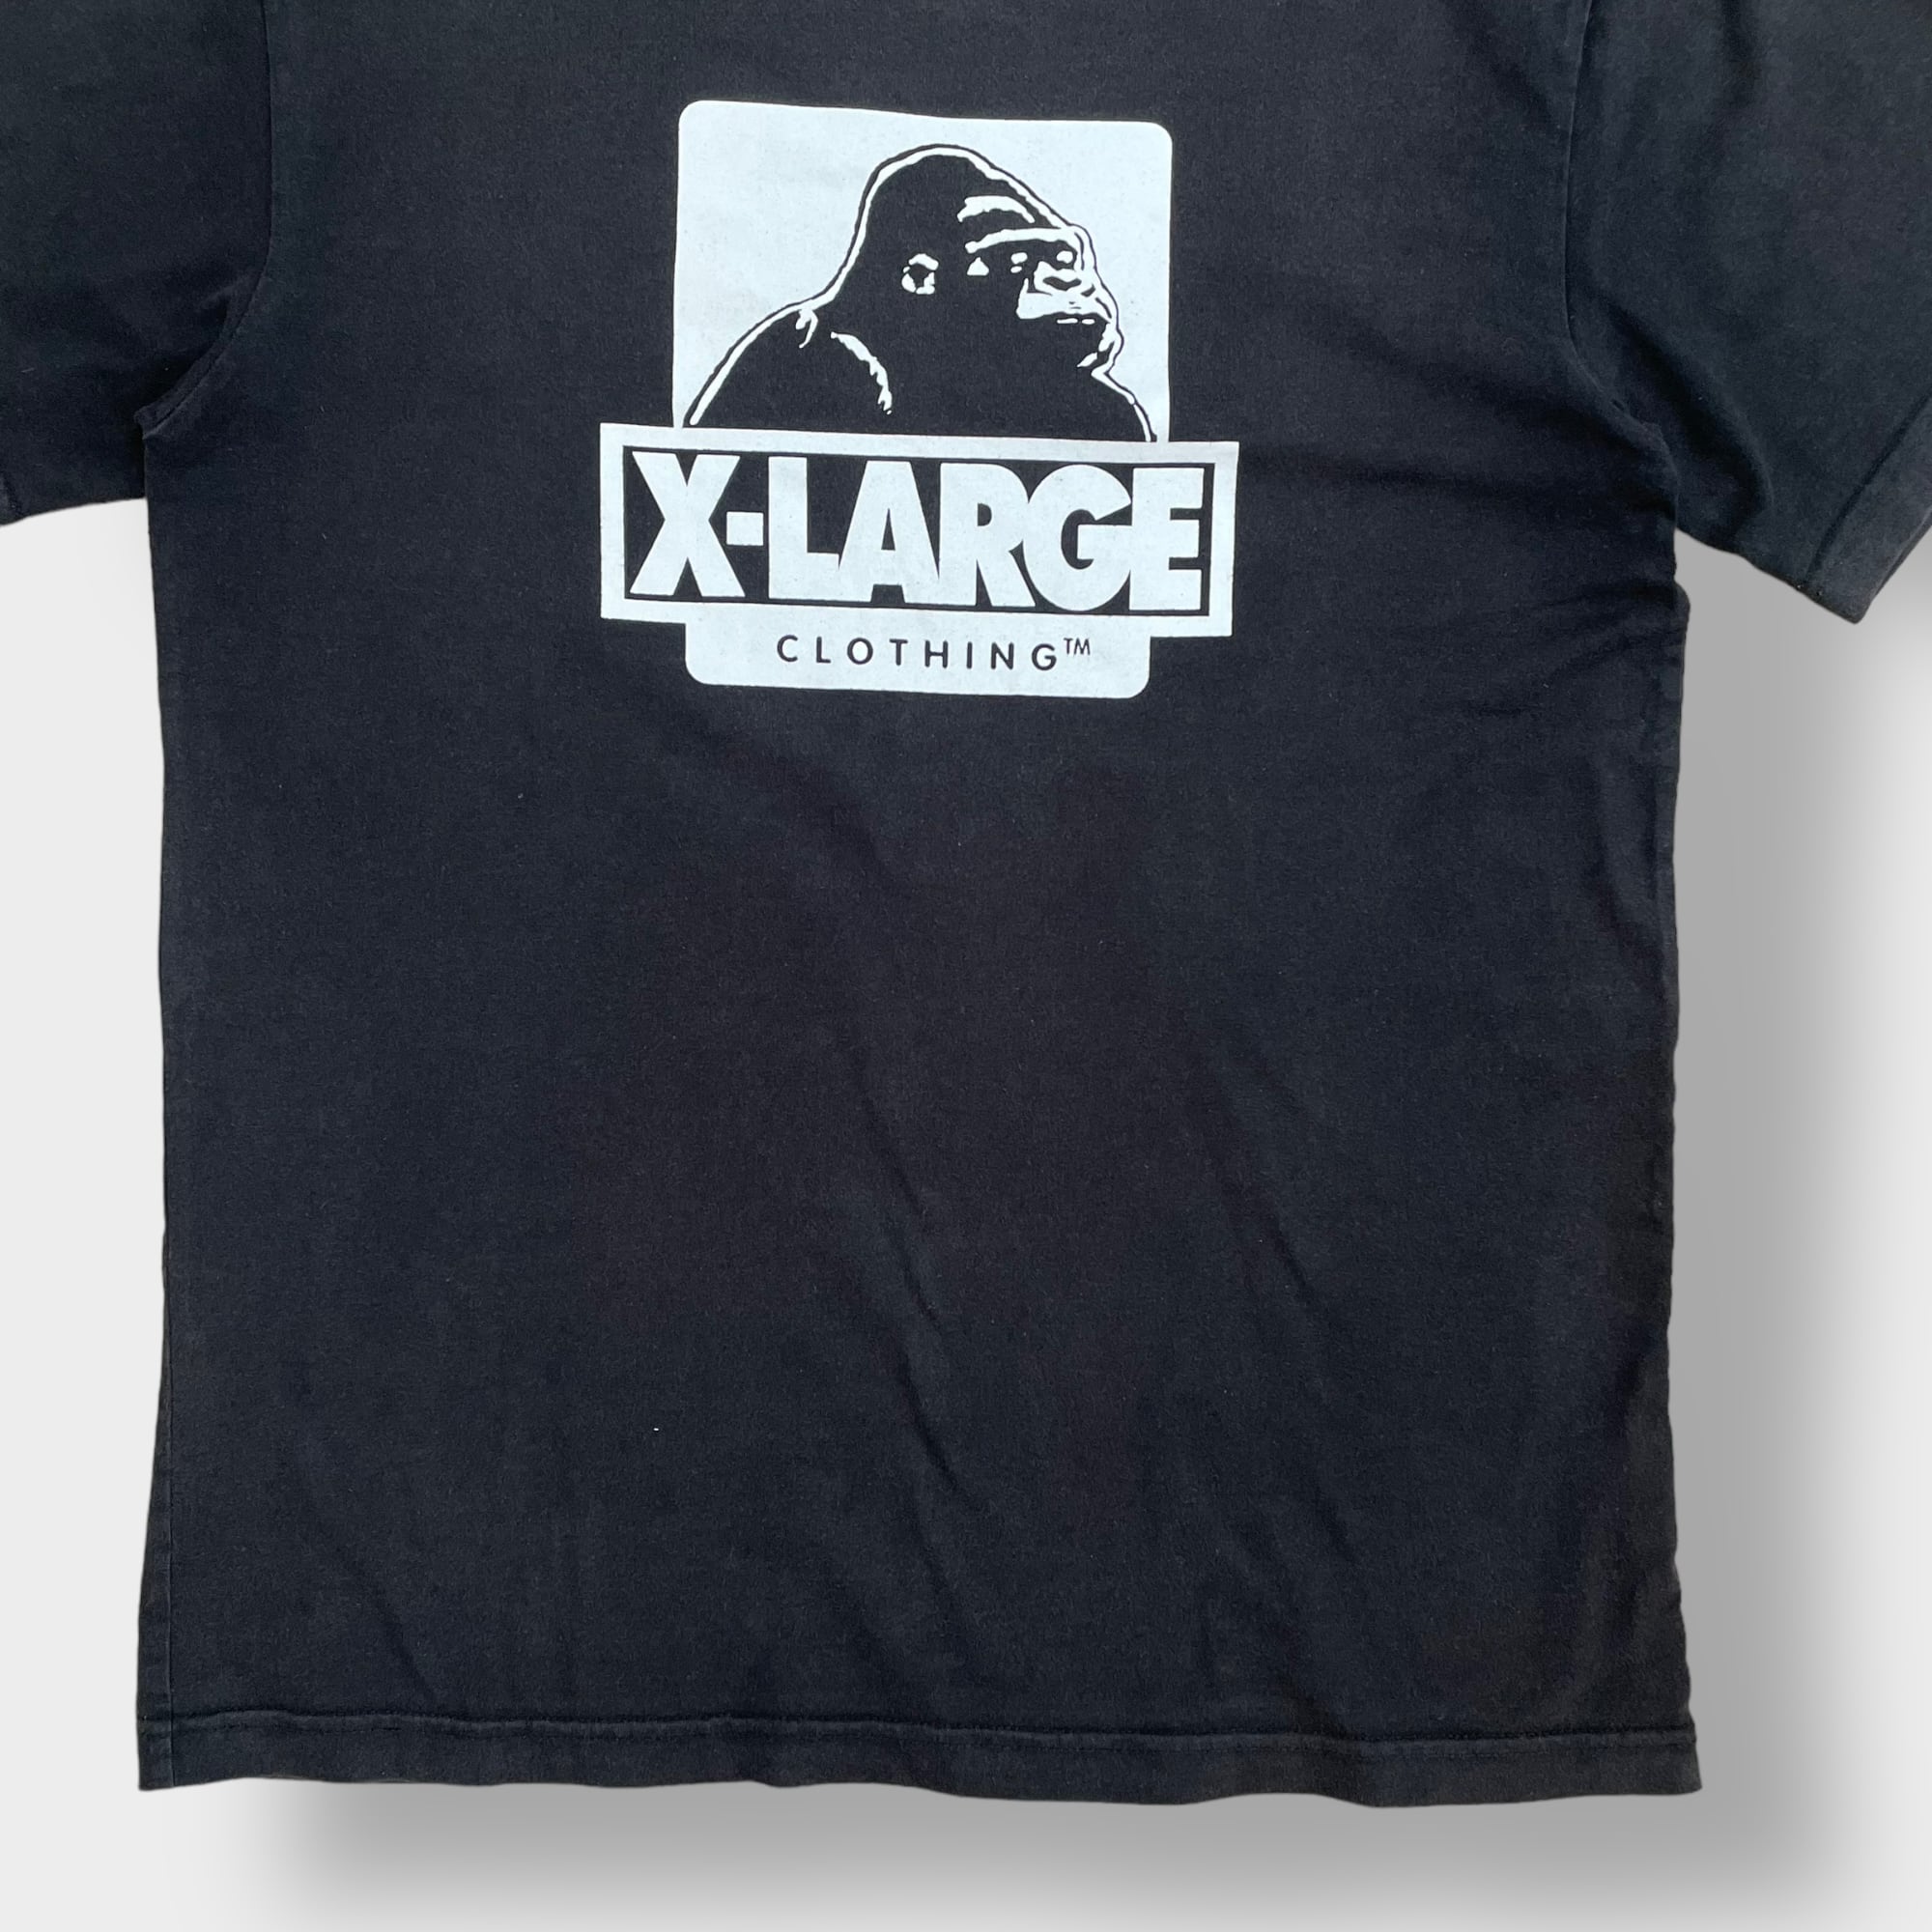 X-LARGE】OGゴリラ ロゴ Tシャツ プリント くすみカラー クルーネック ...